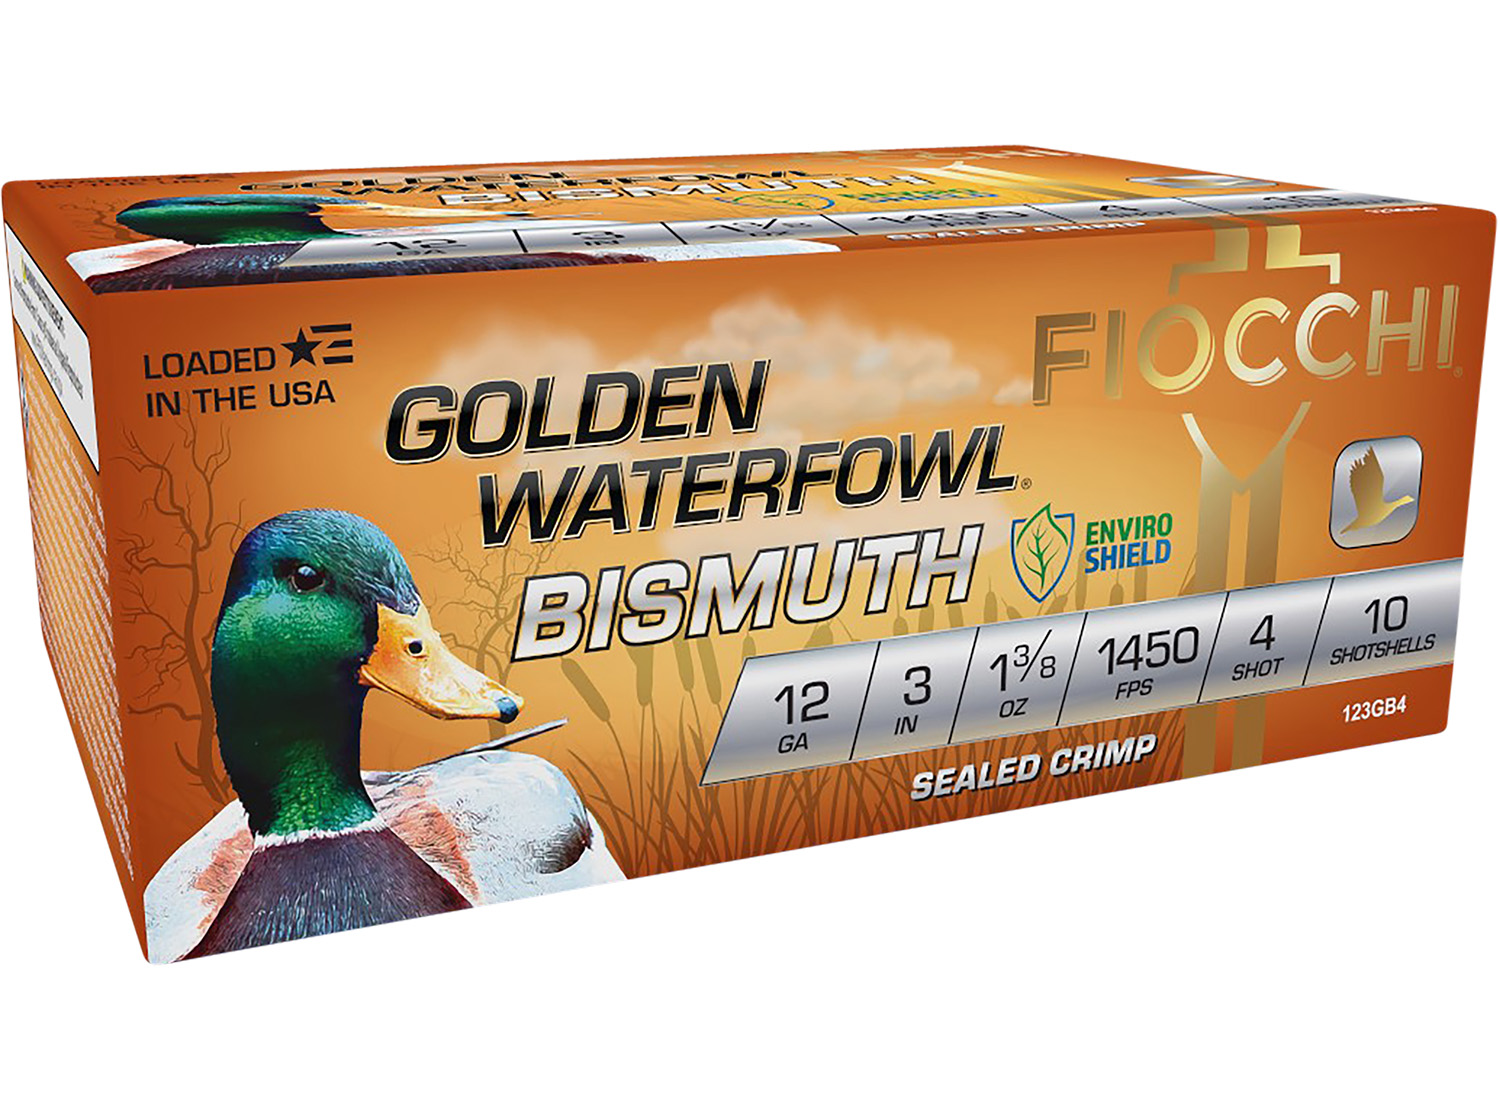 Fiocchi 123GB4 Golden Waterfowl Bismuth 12 Gauge 3